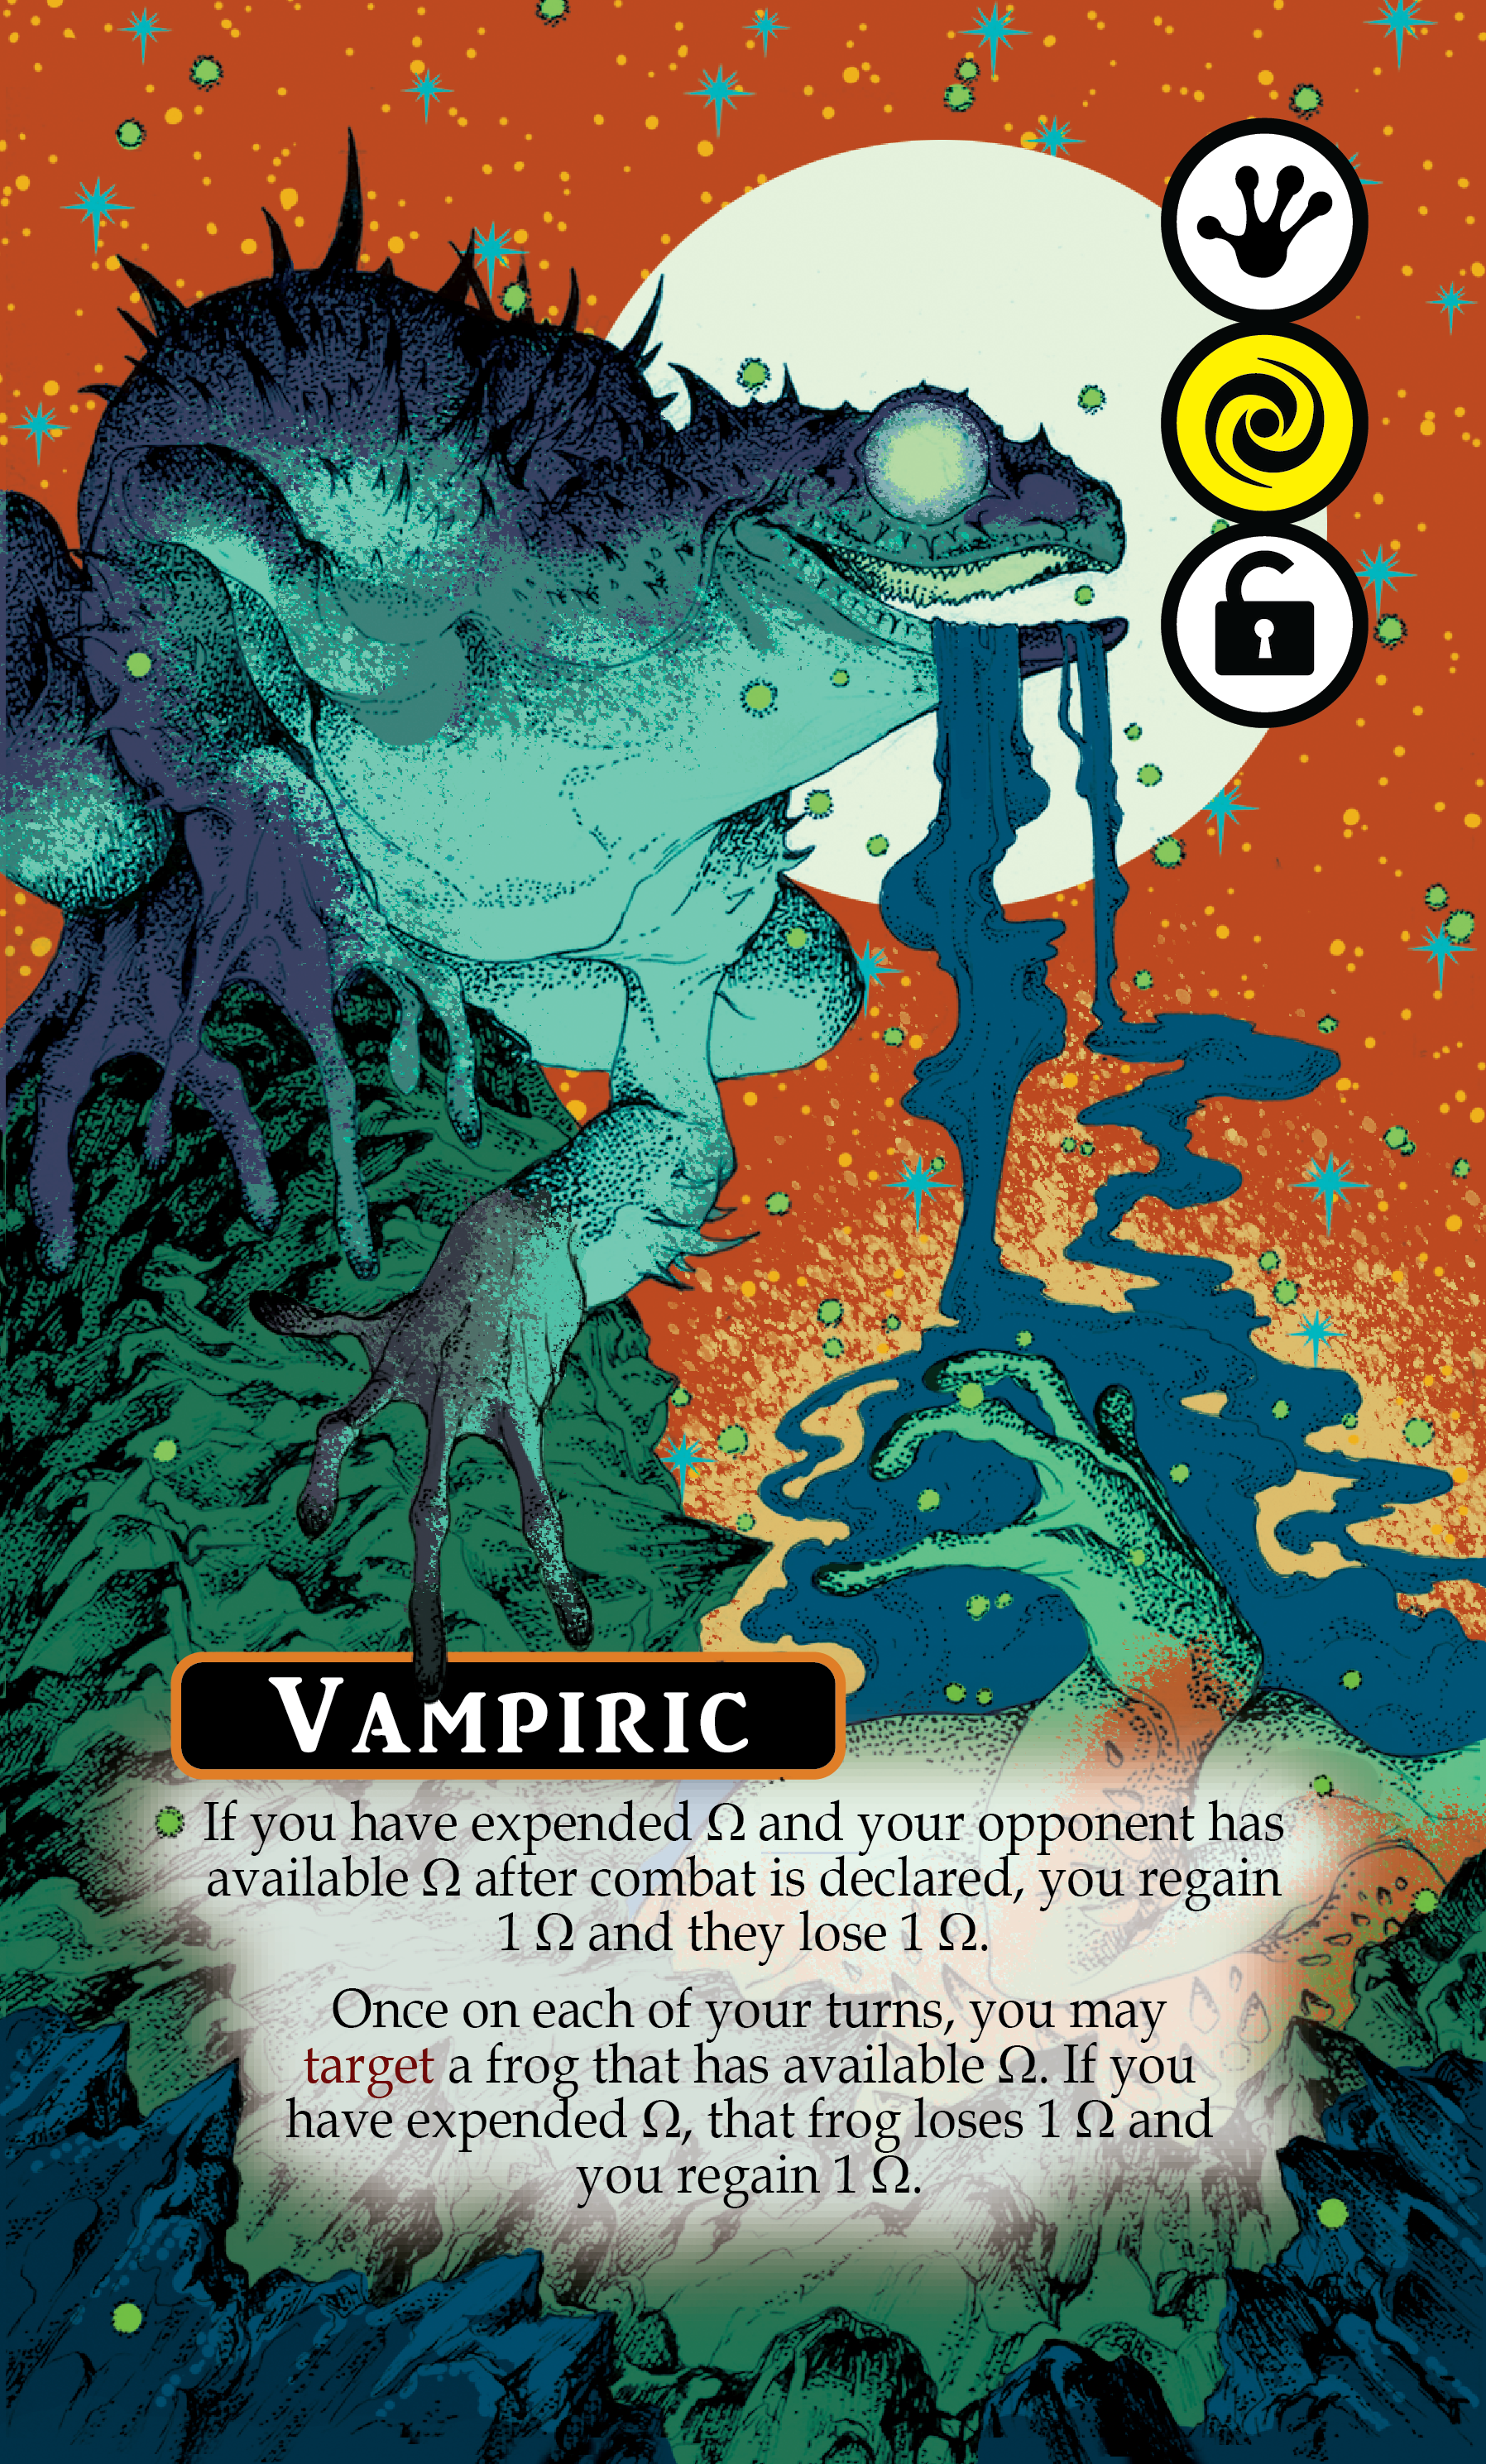 Vampiric Card FINAL (4 Feb 2020)-01.png